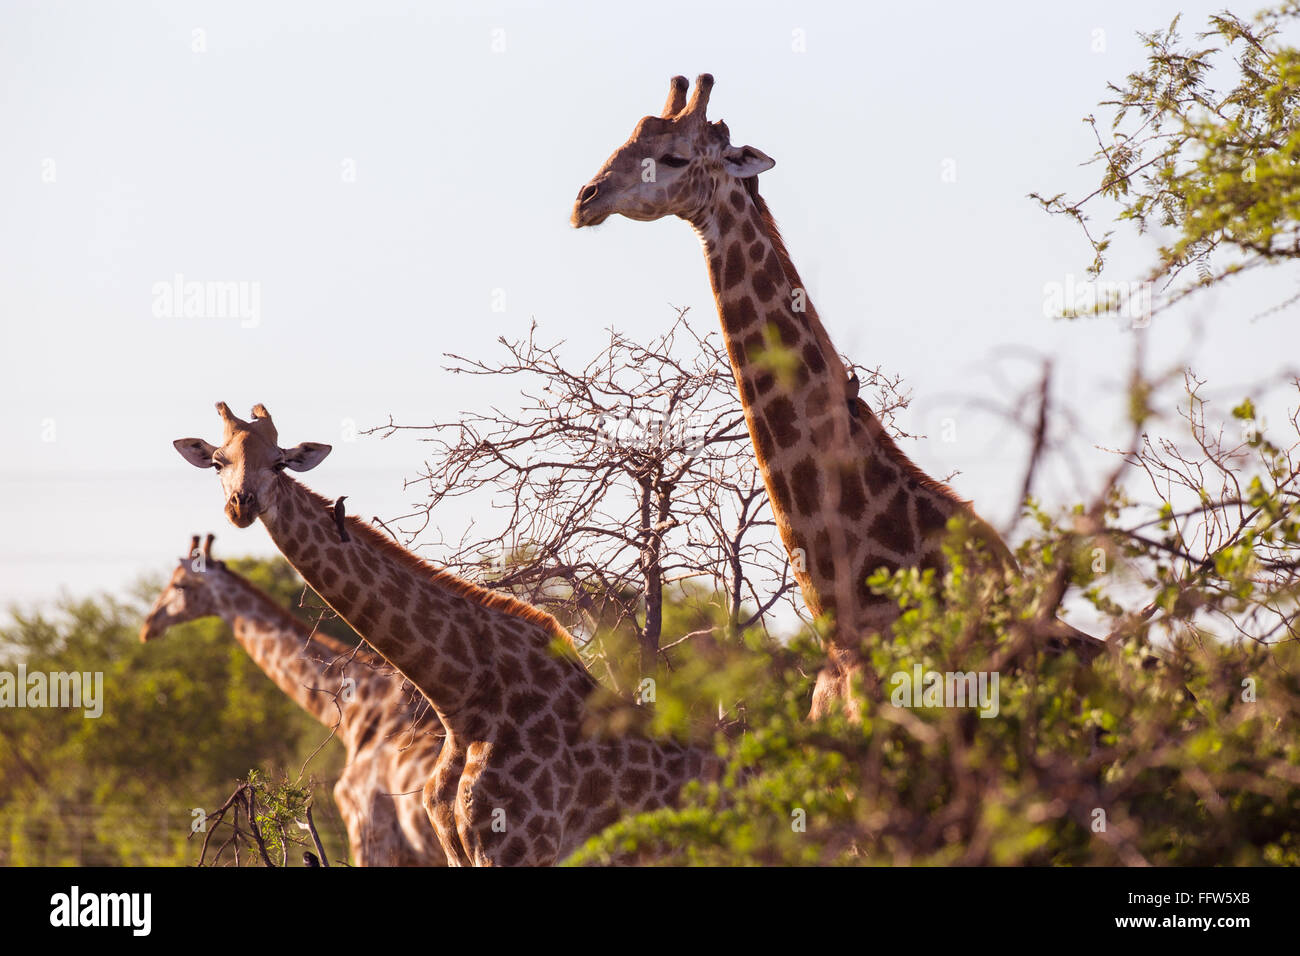 Three giraffes sticking their necks out Stock Photo